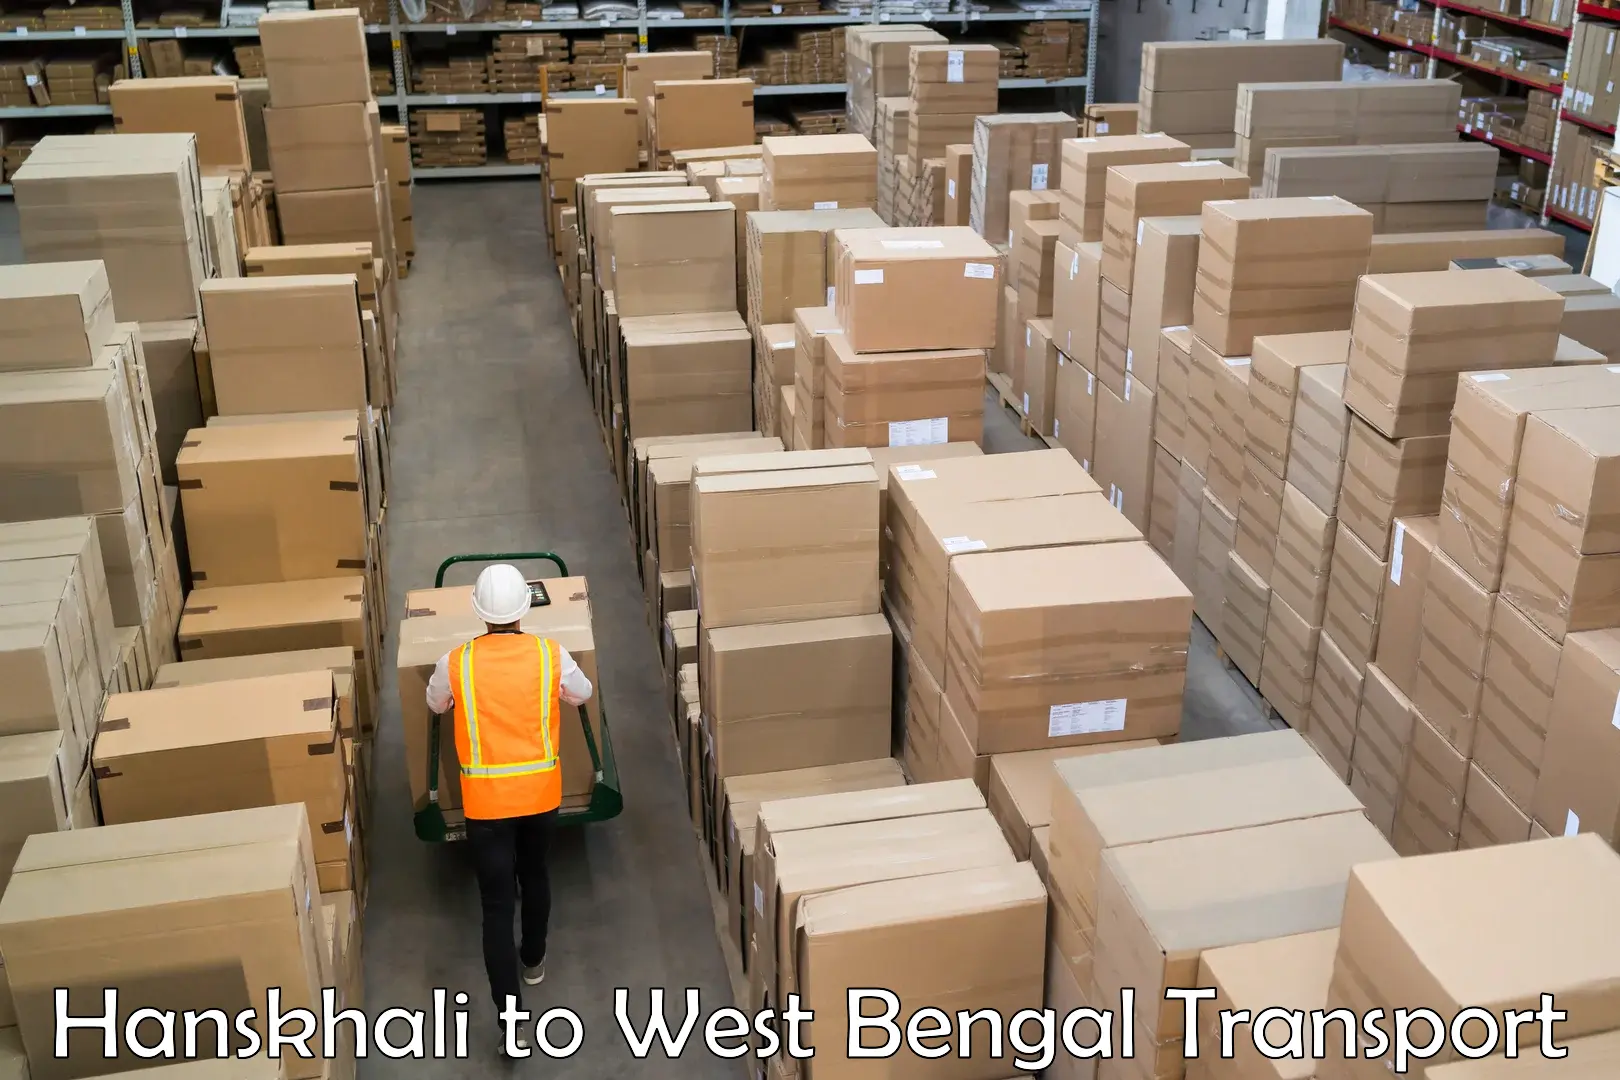 Shipping partner Hanskhali to Murshidabad